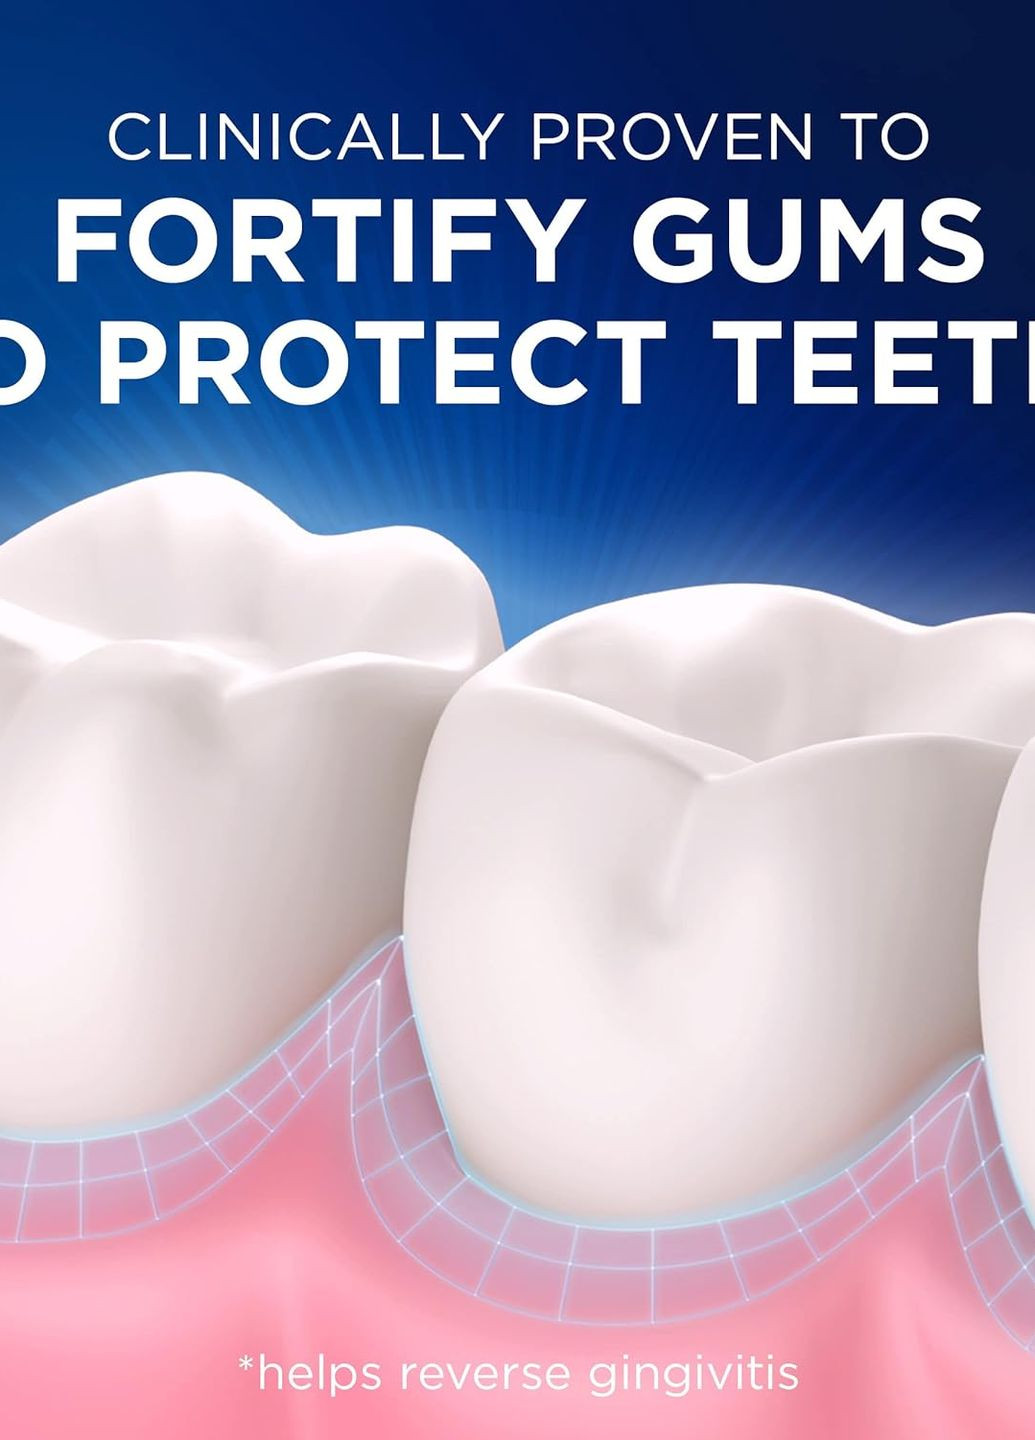 Лечебная Зубная Паста Gum & Enamel Repair Advanced Whitening 104 g Crest (276070723)